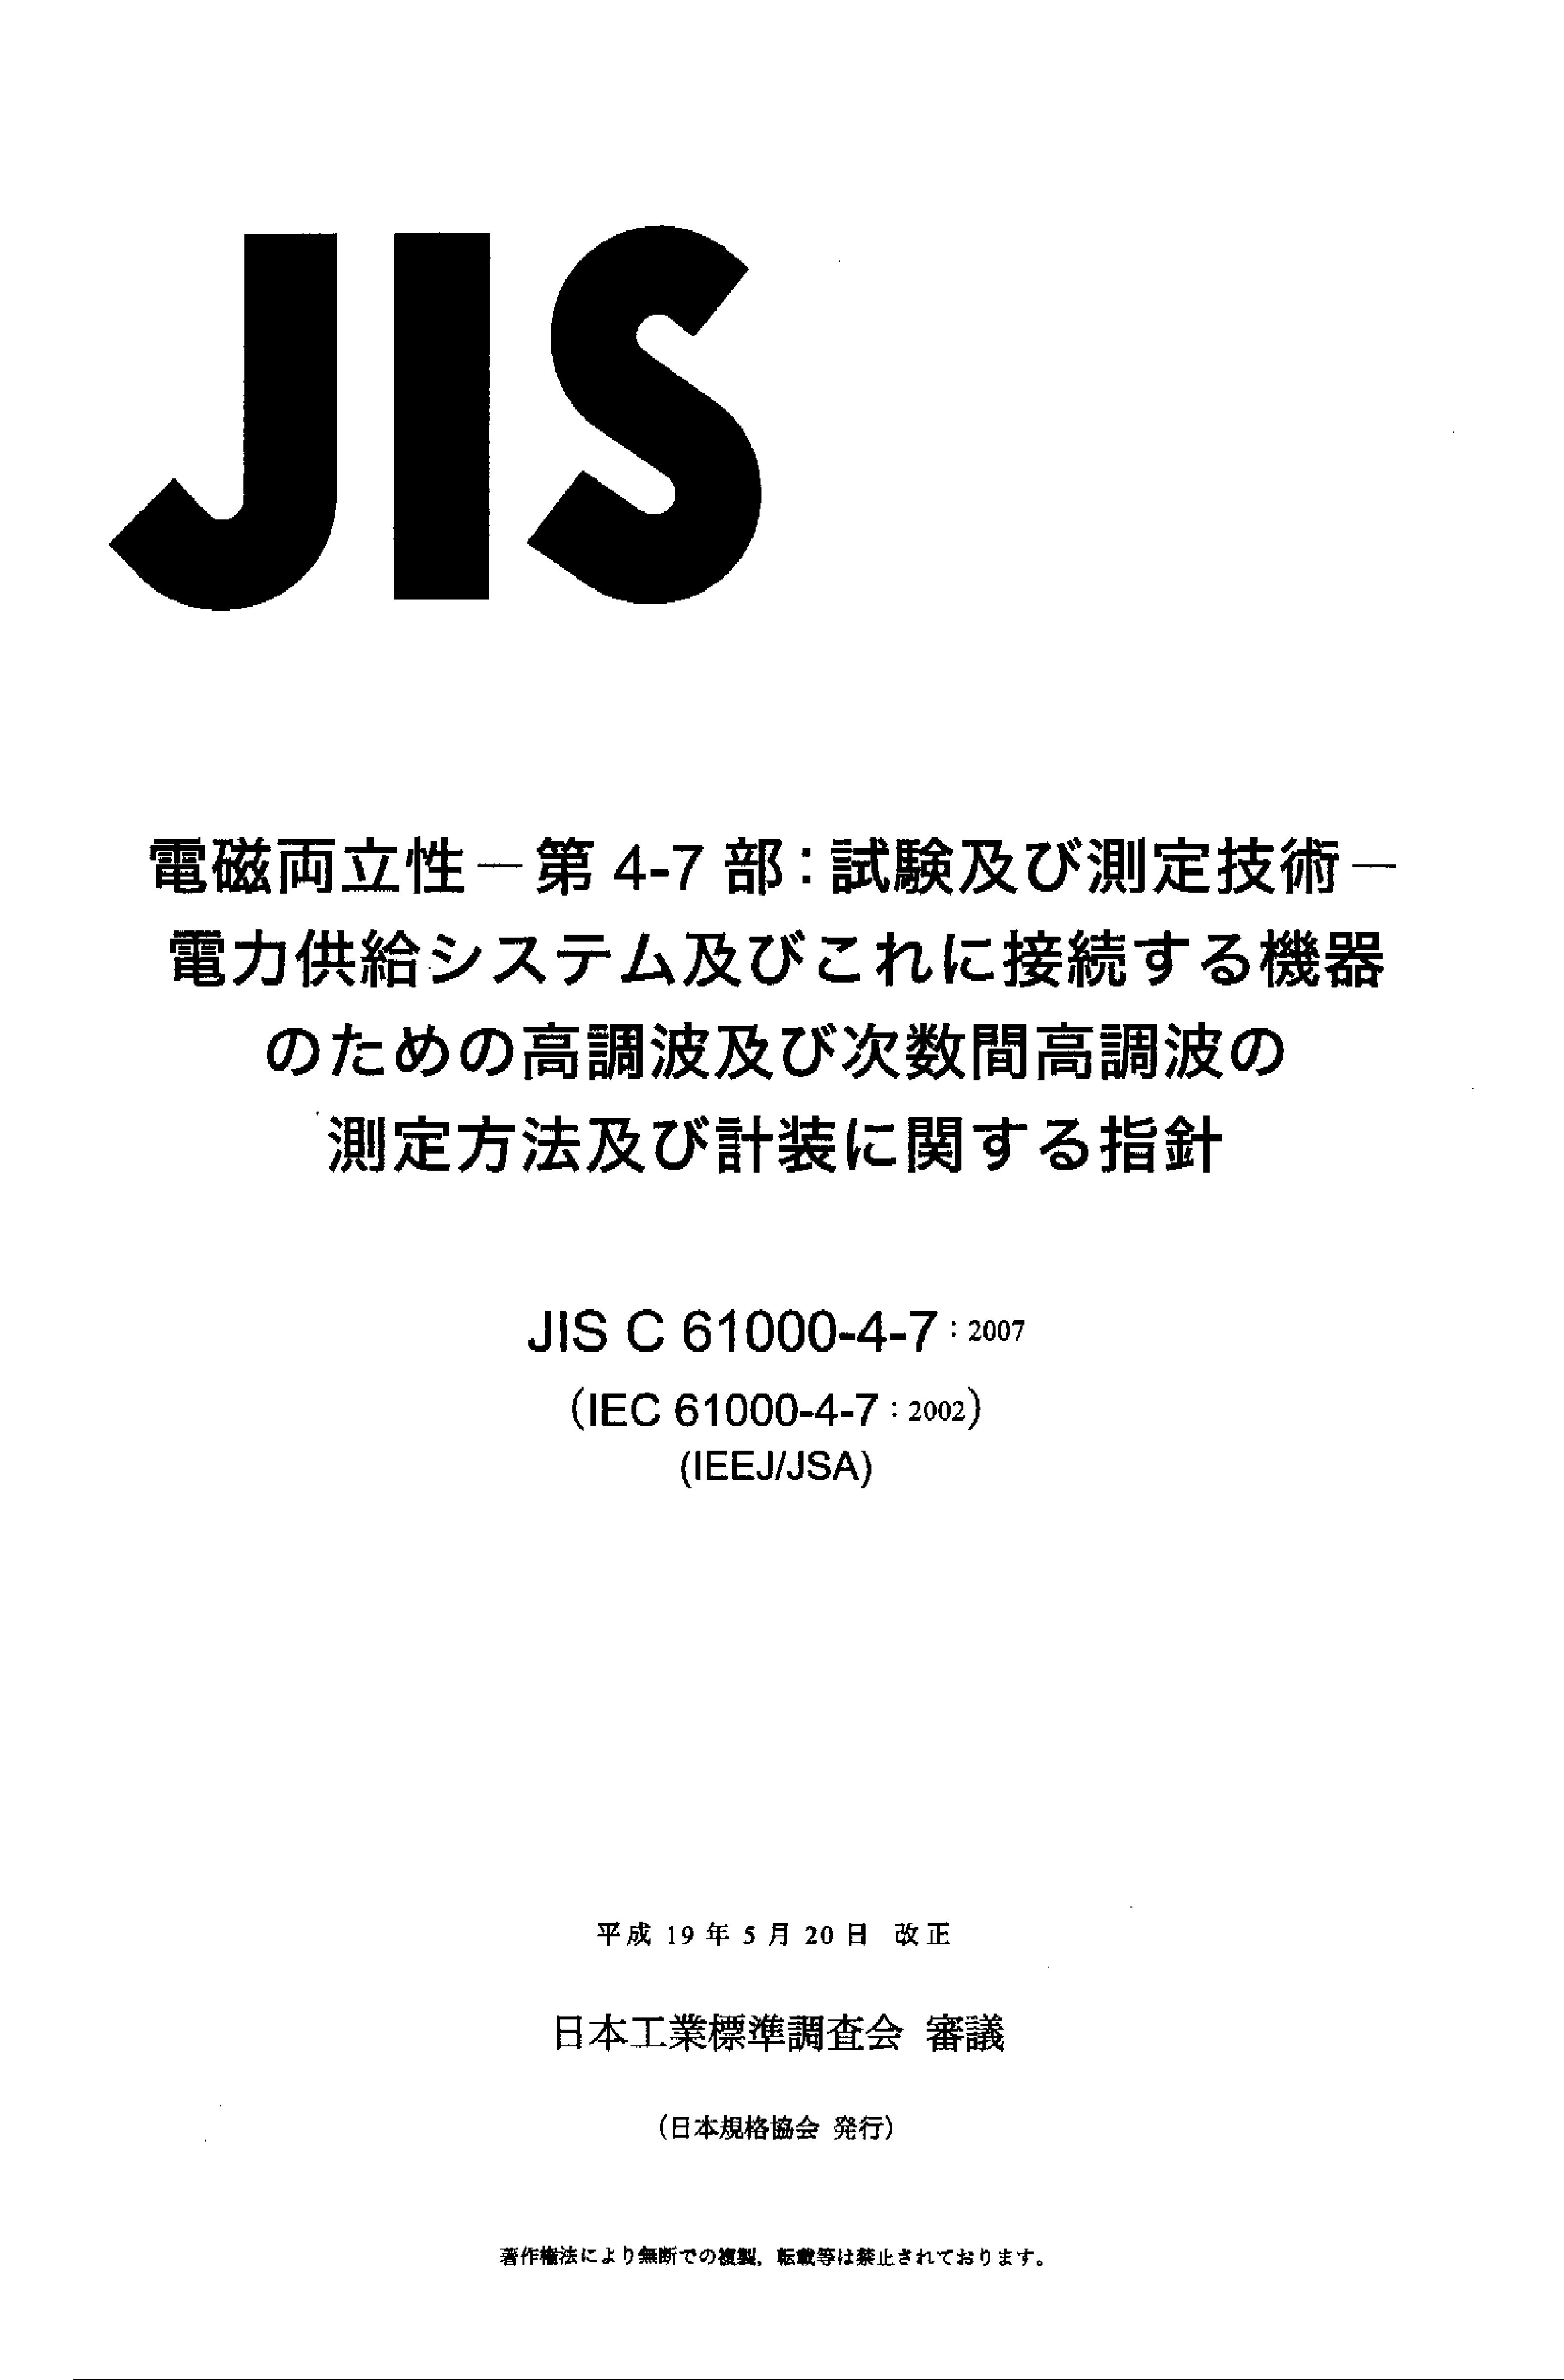 JIS C 61000-4-7:2007封面图